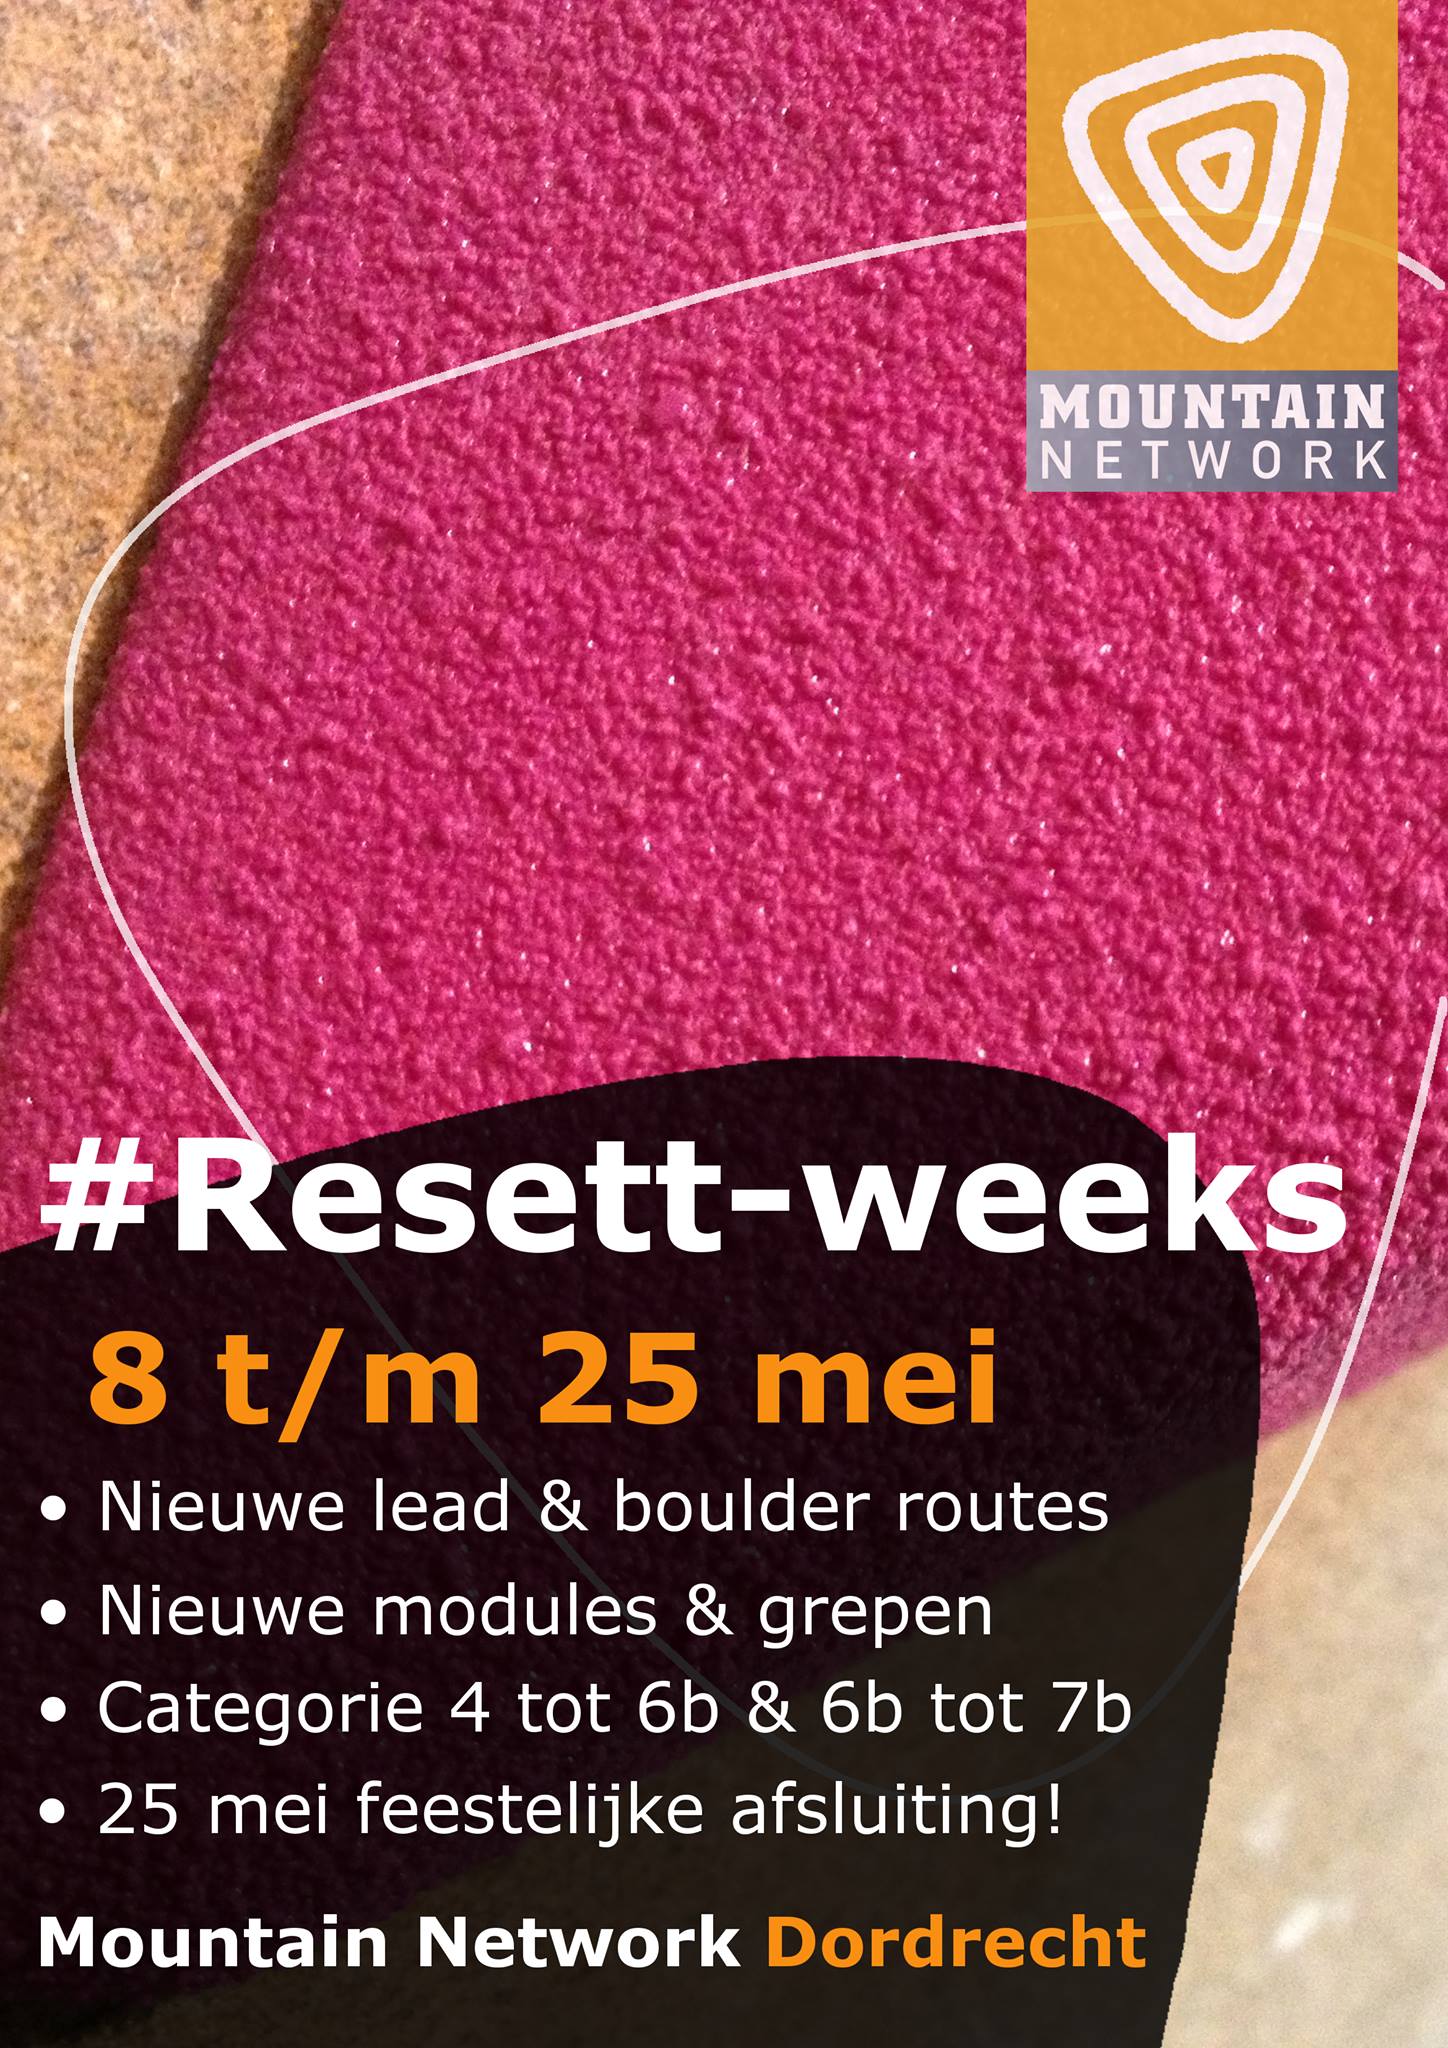 #Resett-weeks in MN Dordrecht van 8 t/m 25 mei 1